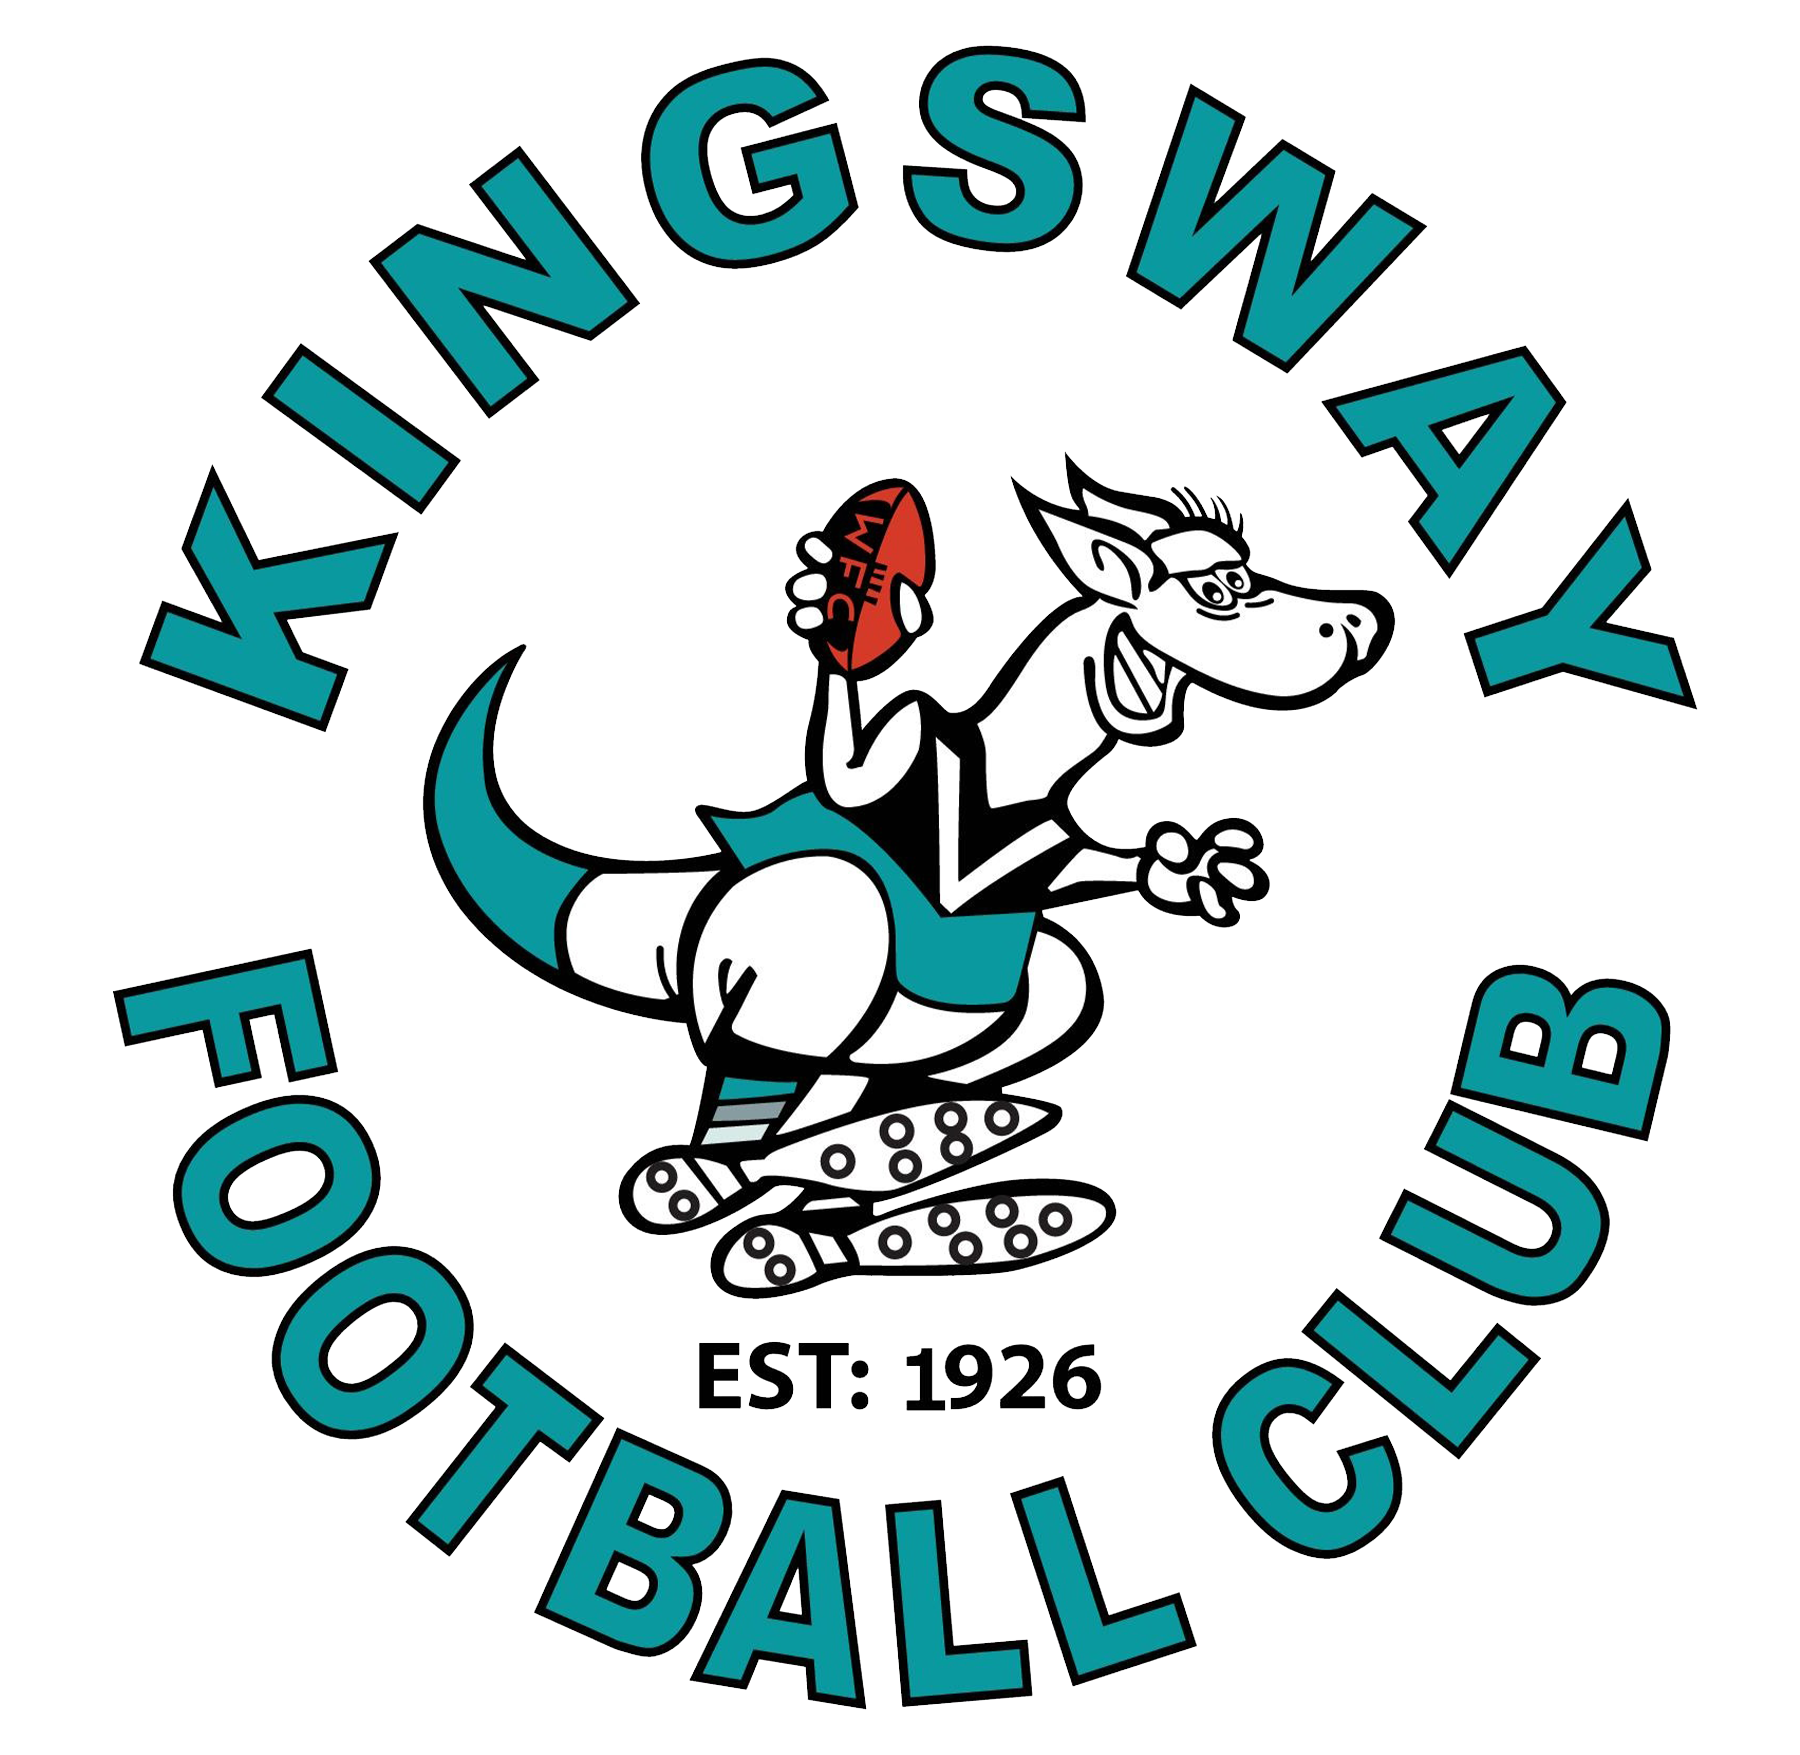 Kingsway Football Club